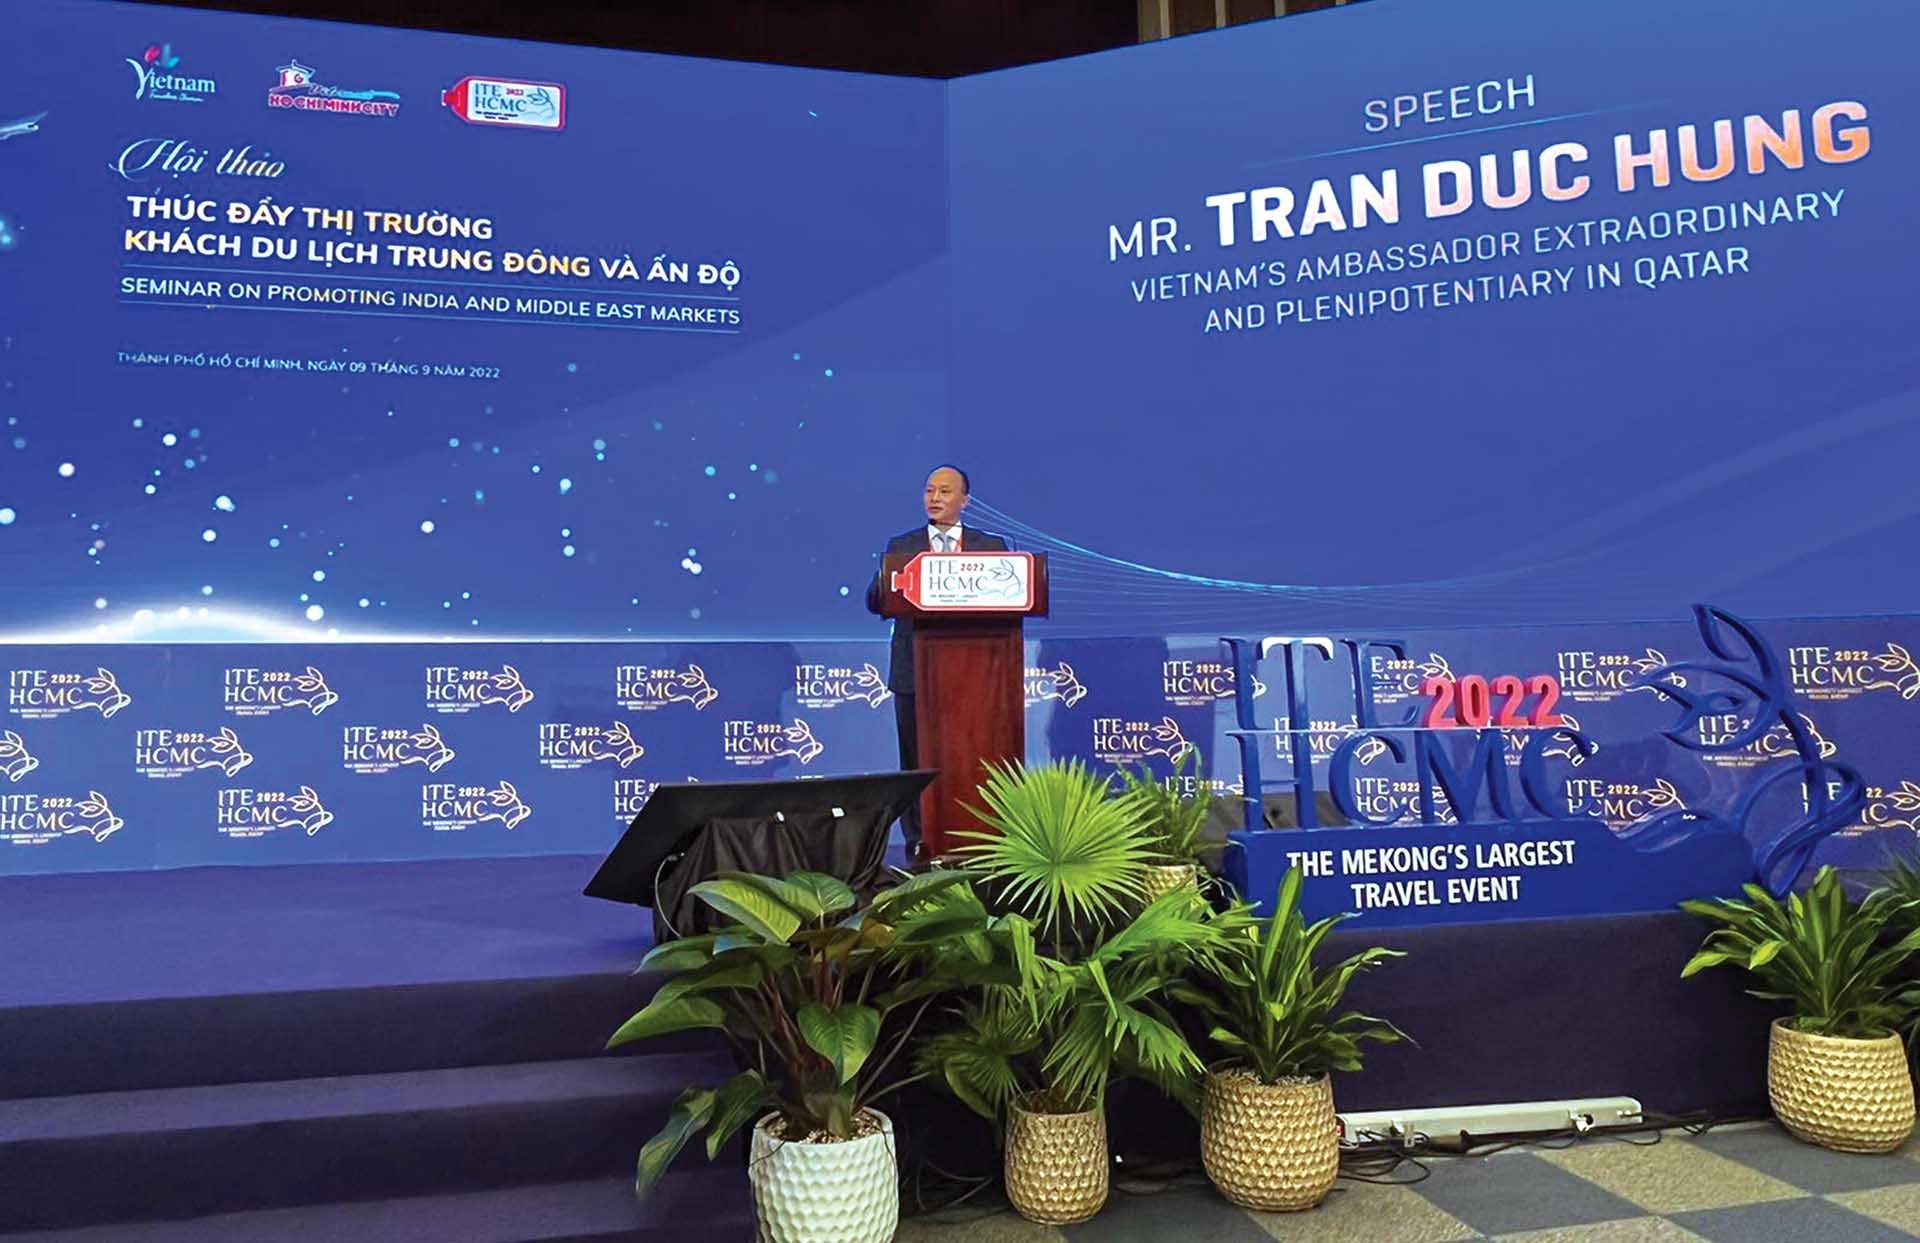 Đại sứ Trần Đức Hùng dẫn đoàn doanh nghiệp Qatar về dự Hội nghị Thúc đẩy thị trường khách du lịch Trung Đông và Ấn Độ tại TP. Hồ Chí Minh, tháng 9/2022. (Nguồn: ĐSQ Việt Nam tại Qatar)